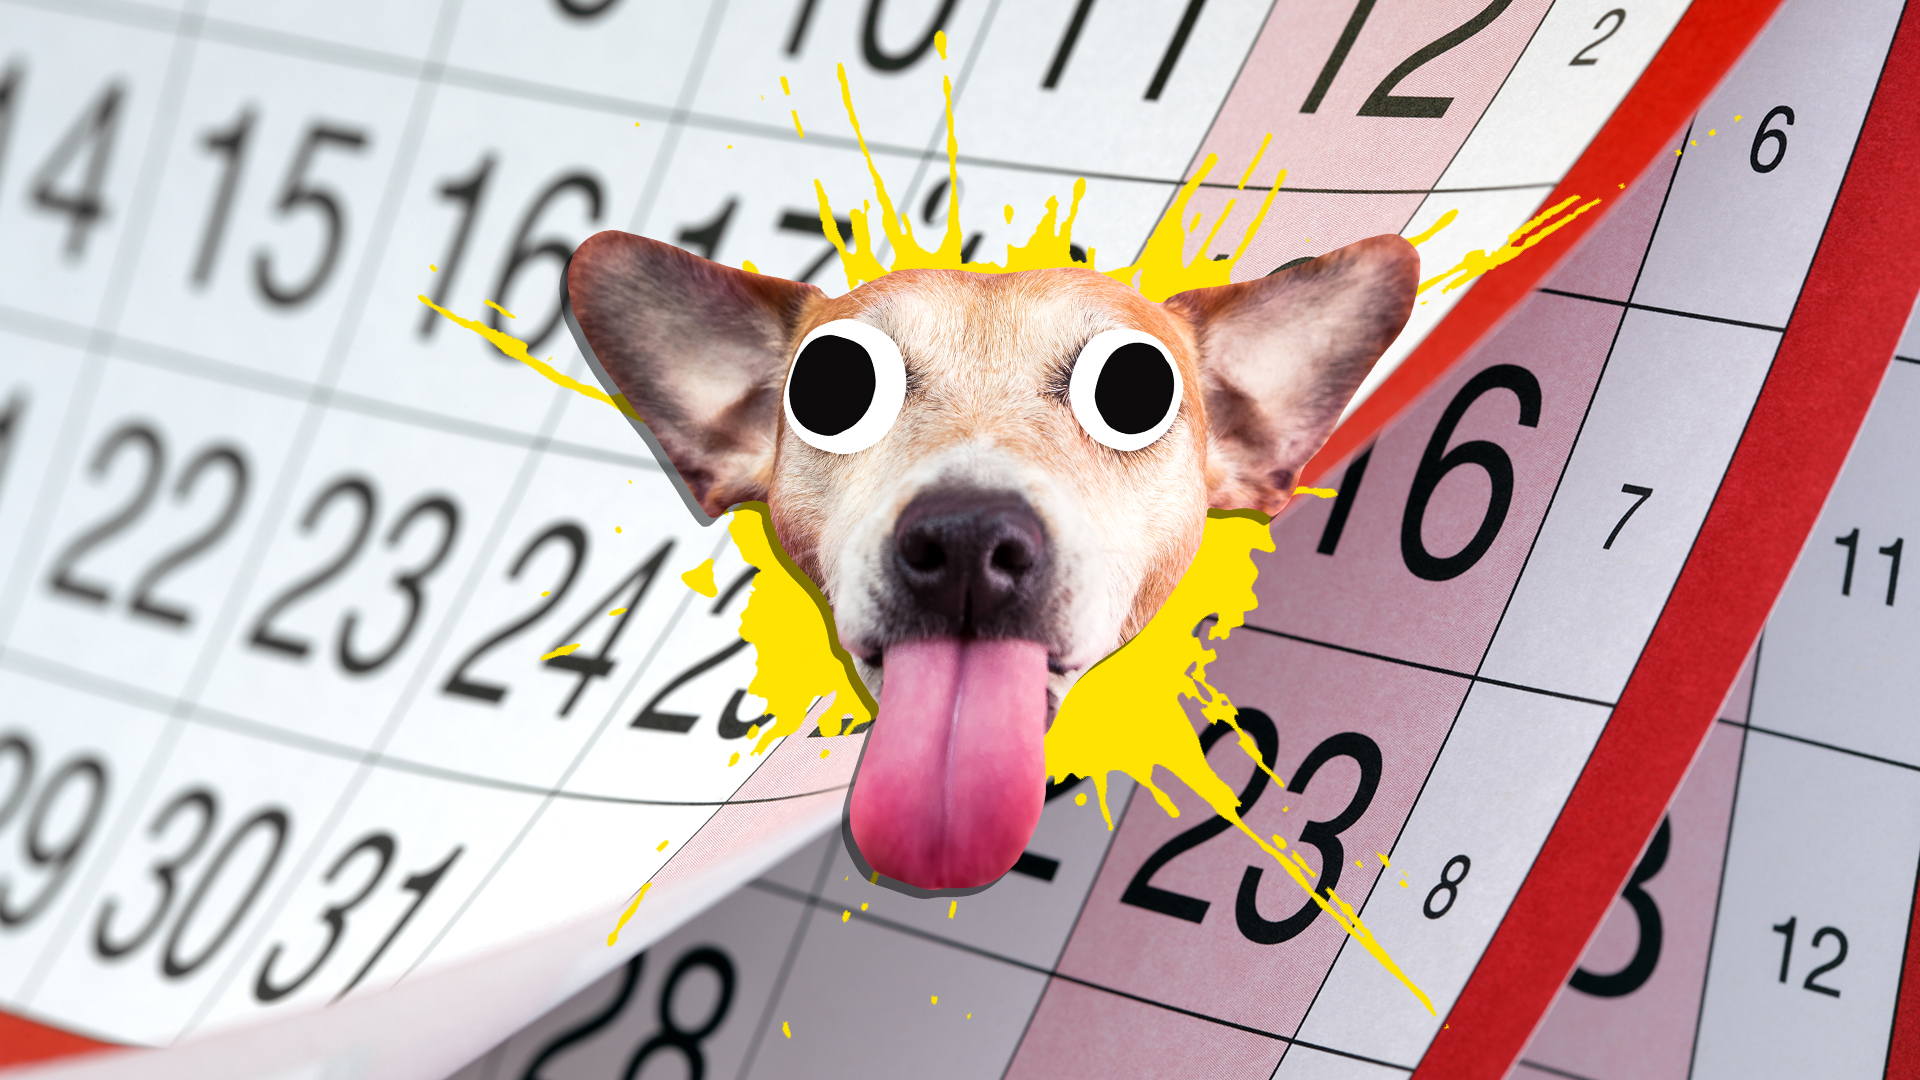 A dog and a calendar